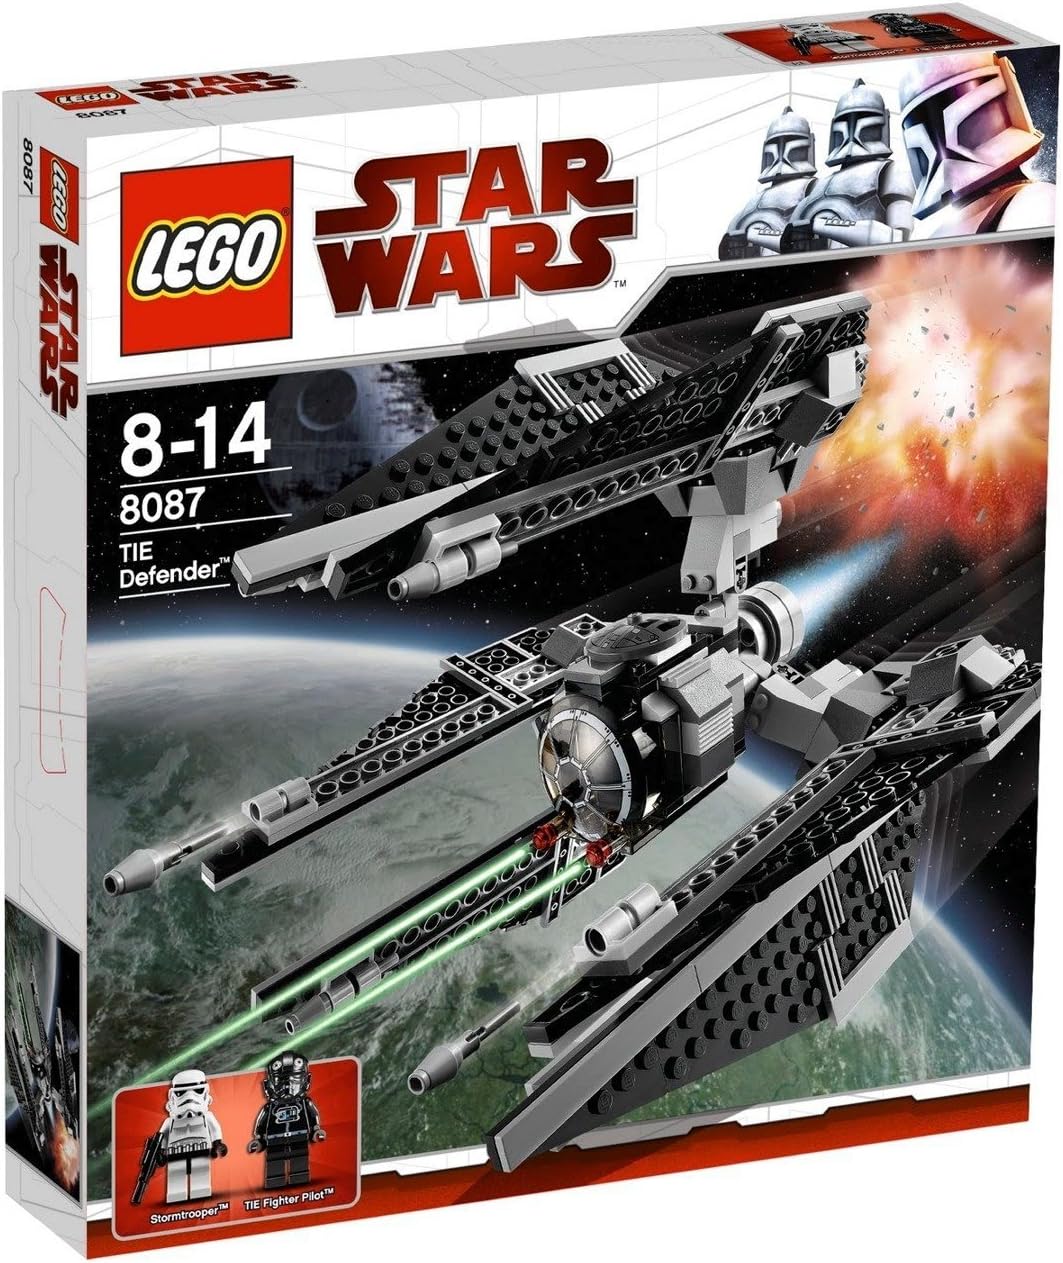 PRE-LOVED LEGO Star Wars Legends TIE Defender 8087